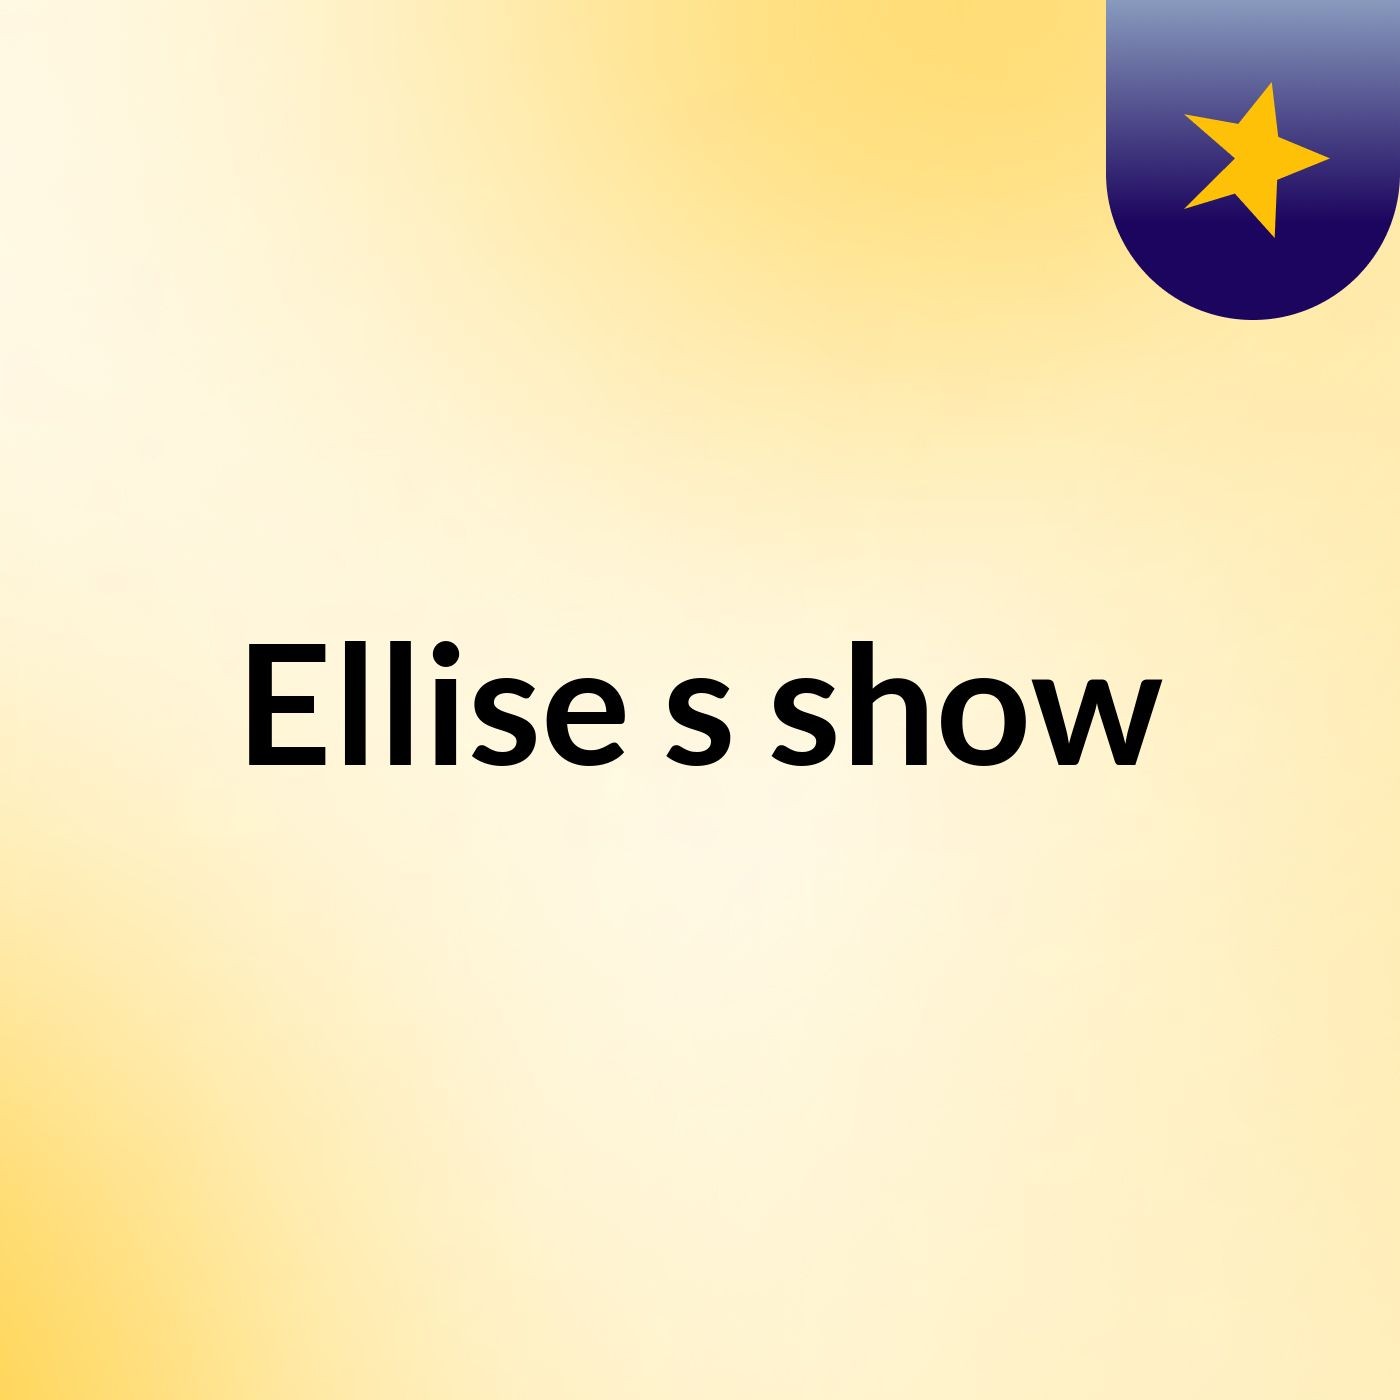 Ellise's show